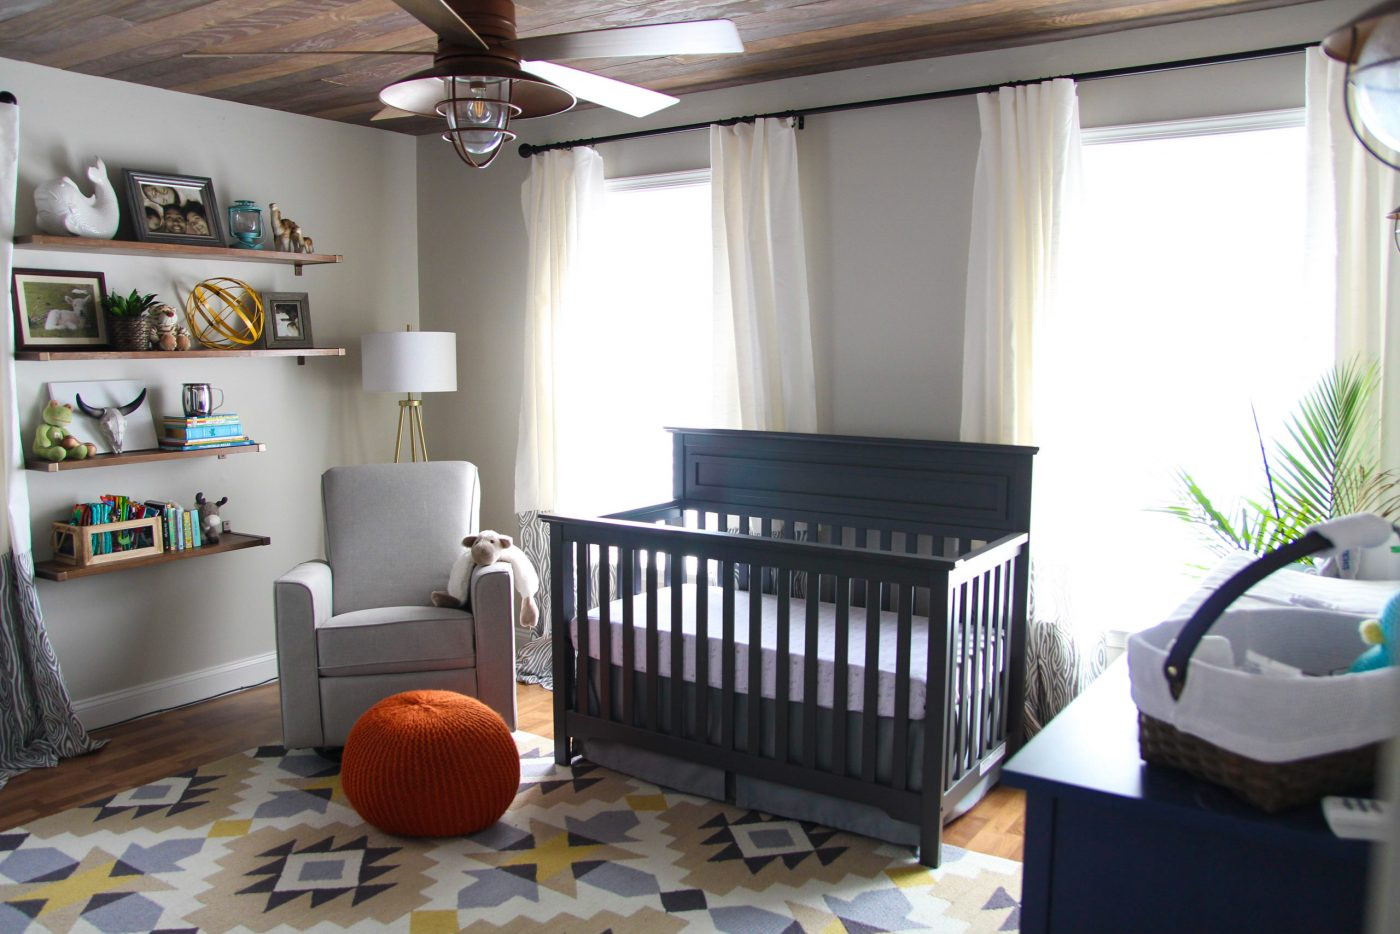 Diy Baby Room Ideas Pinterest
 Woodland Nursery Decor A Rustic Retreat for a Baby Boy